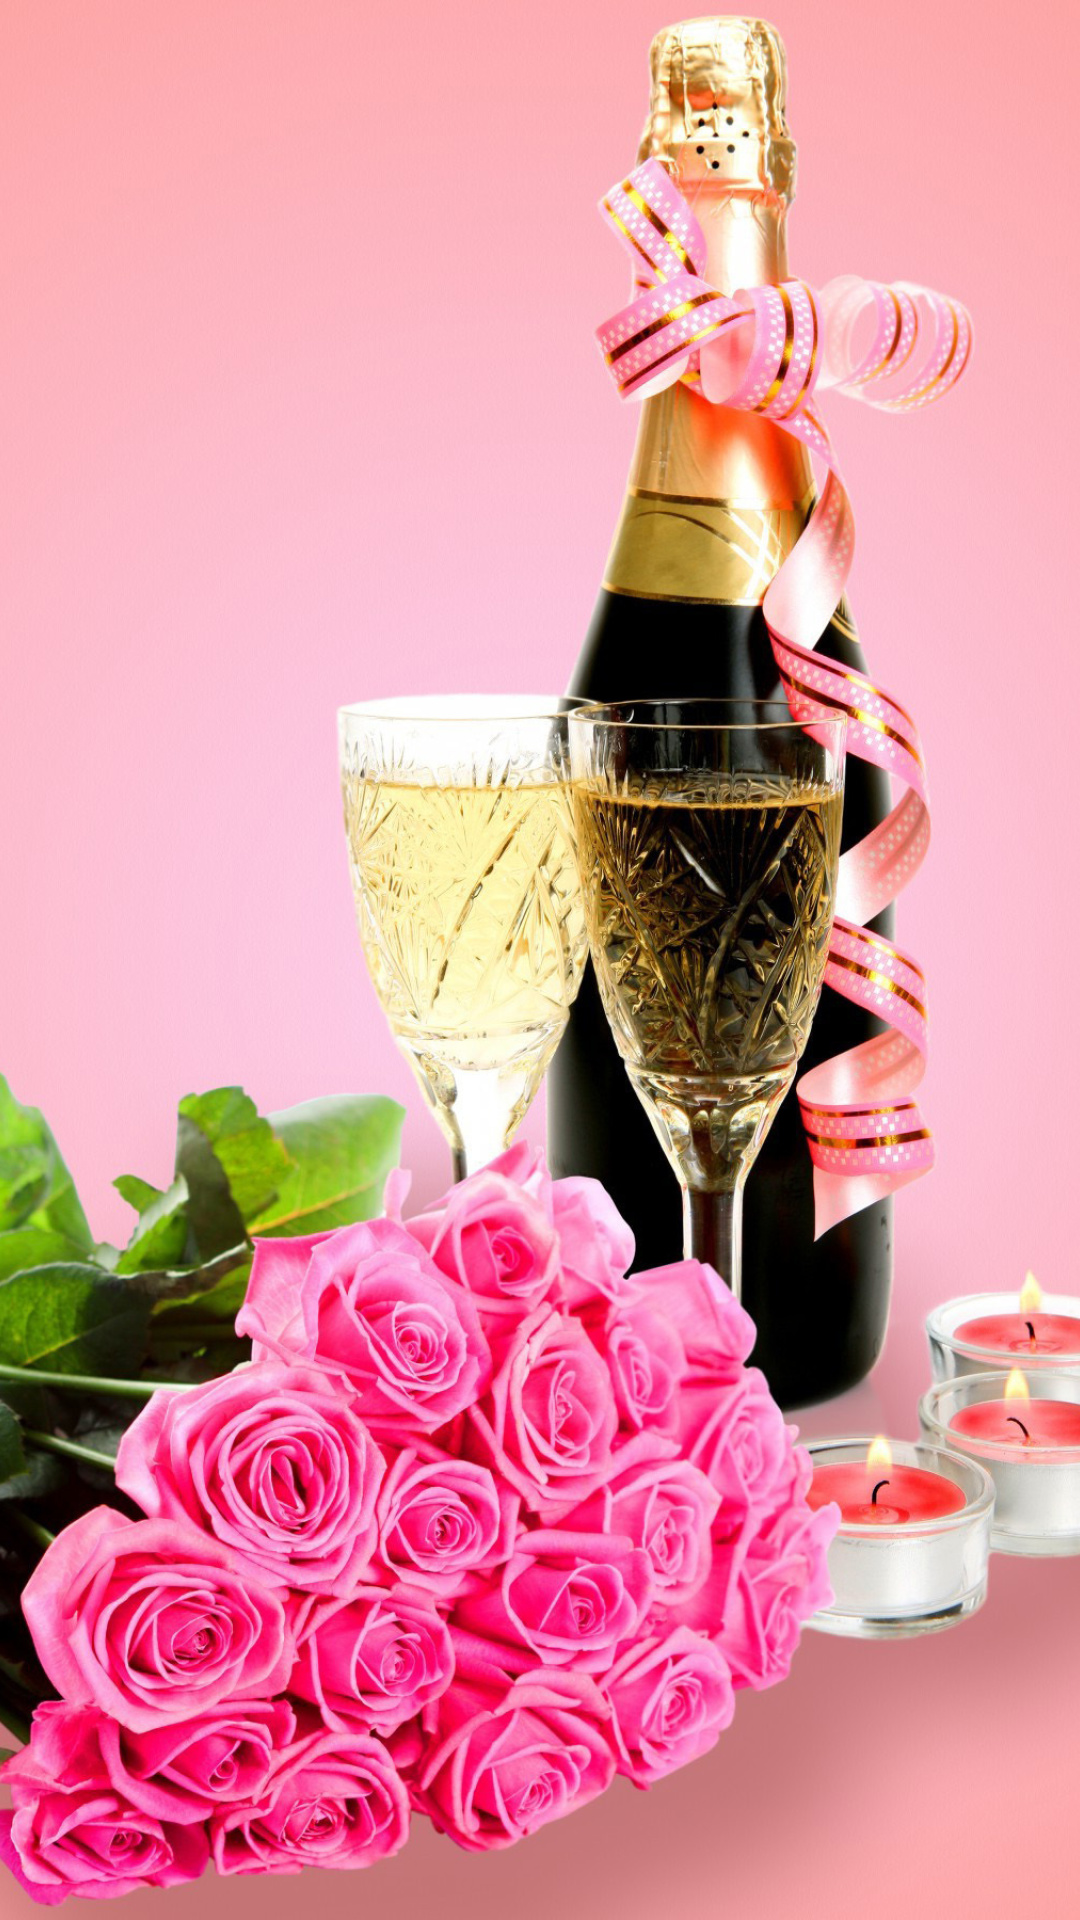 Шампанское и розы 69. Цветы и шампанское. Шампанское и розы. Торт шампанское цветы. Букеты цветов и шампанского.